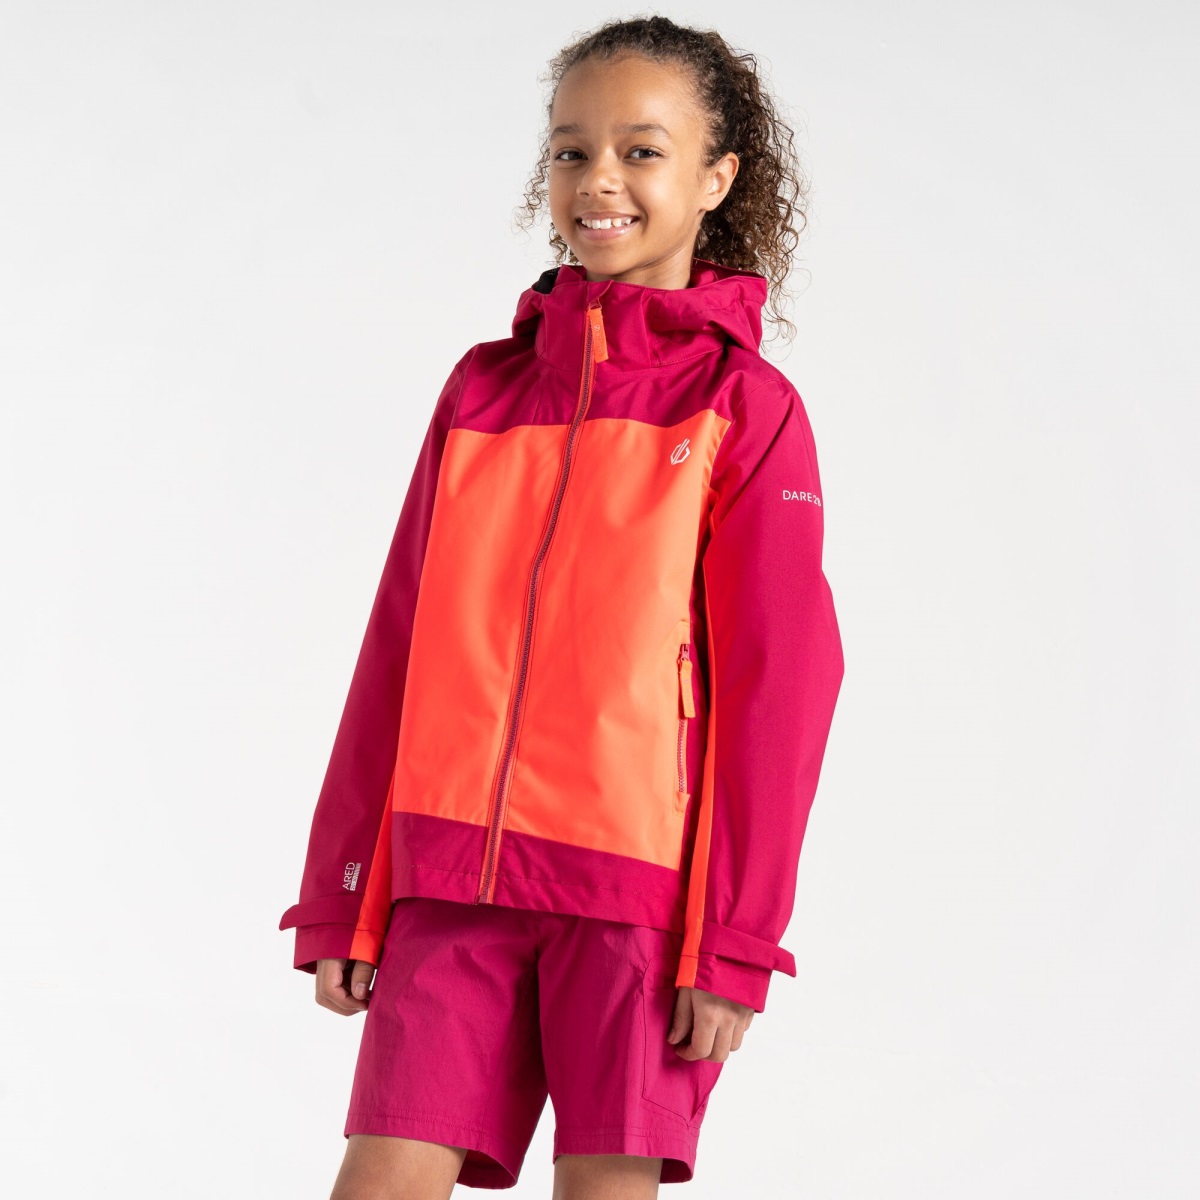 Dětská outdoorová bunda Dare2b EXPLORE oranžová/růžová 110-116